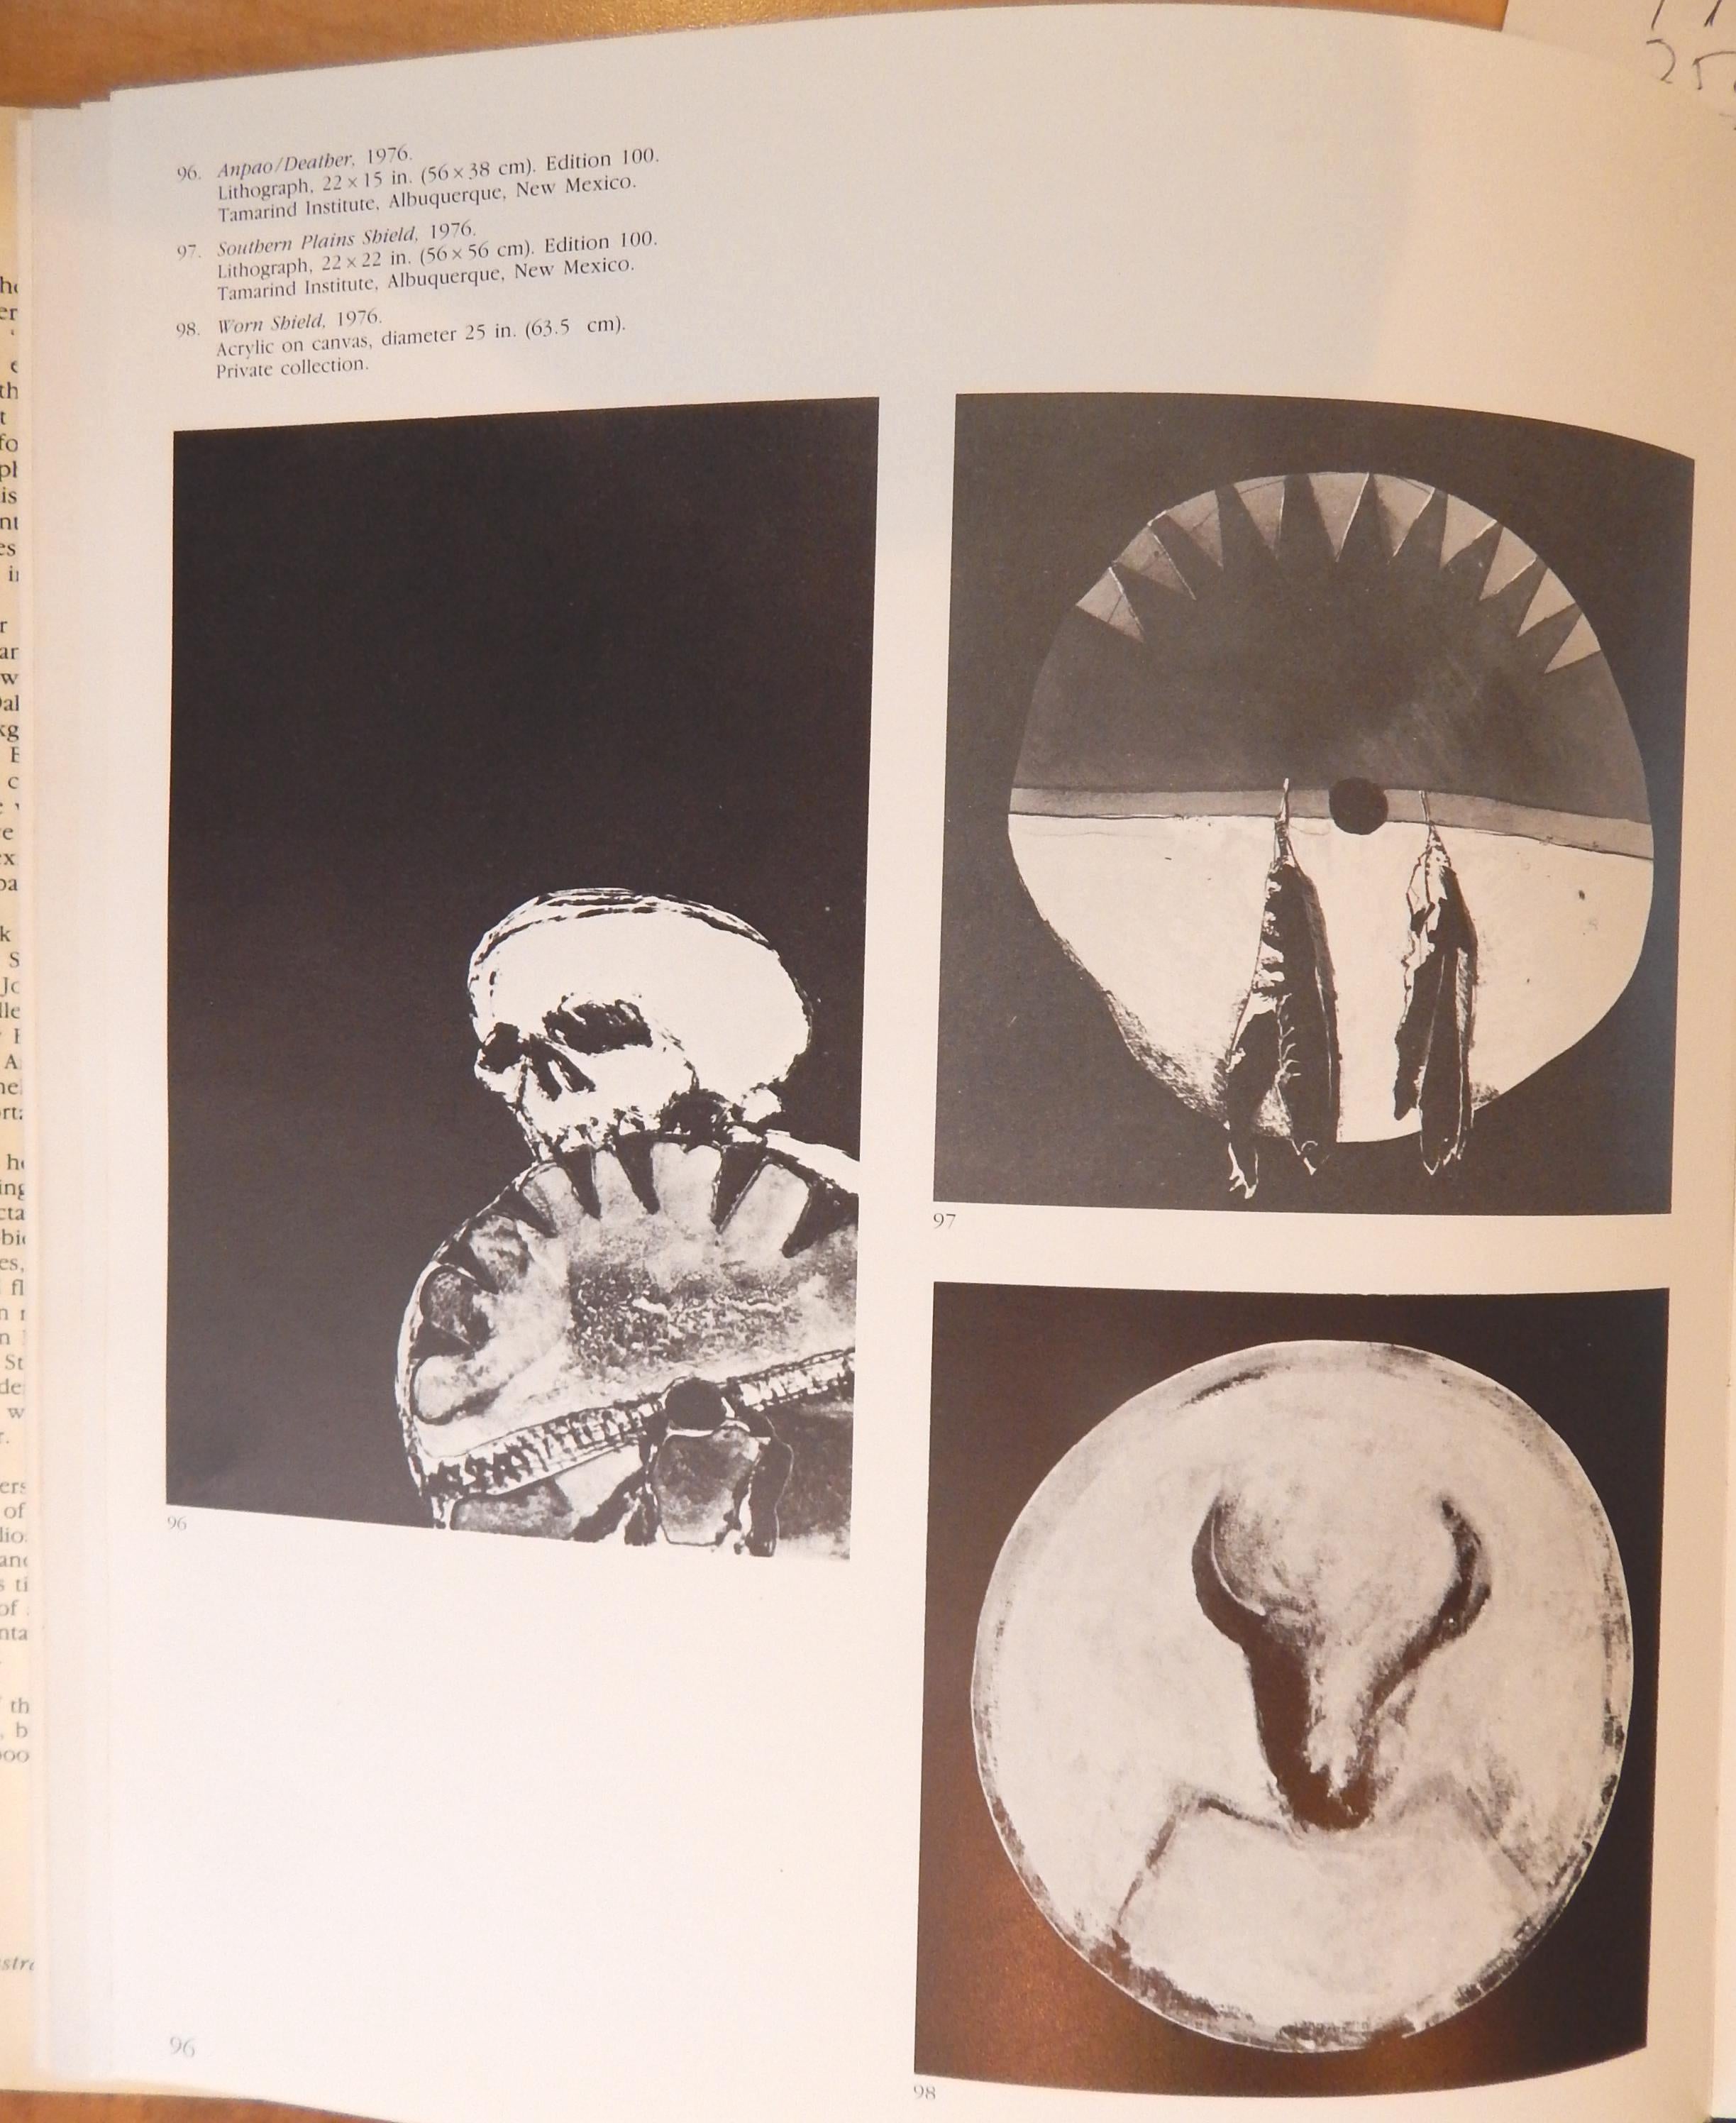 Canvas Fritz Scholder Painting, Worn Shield, 1976